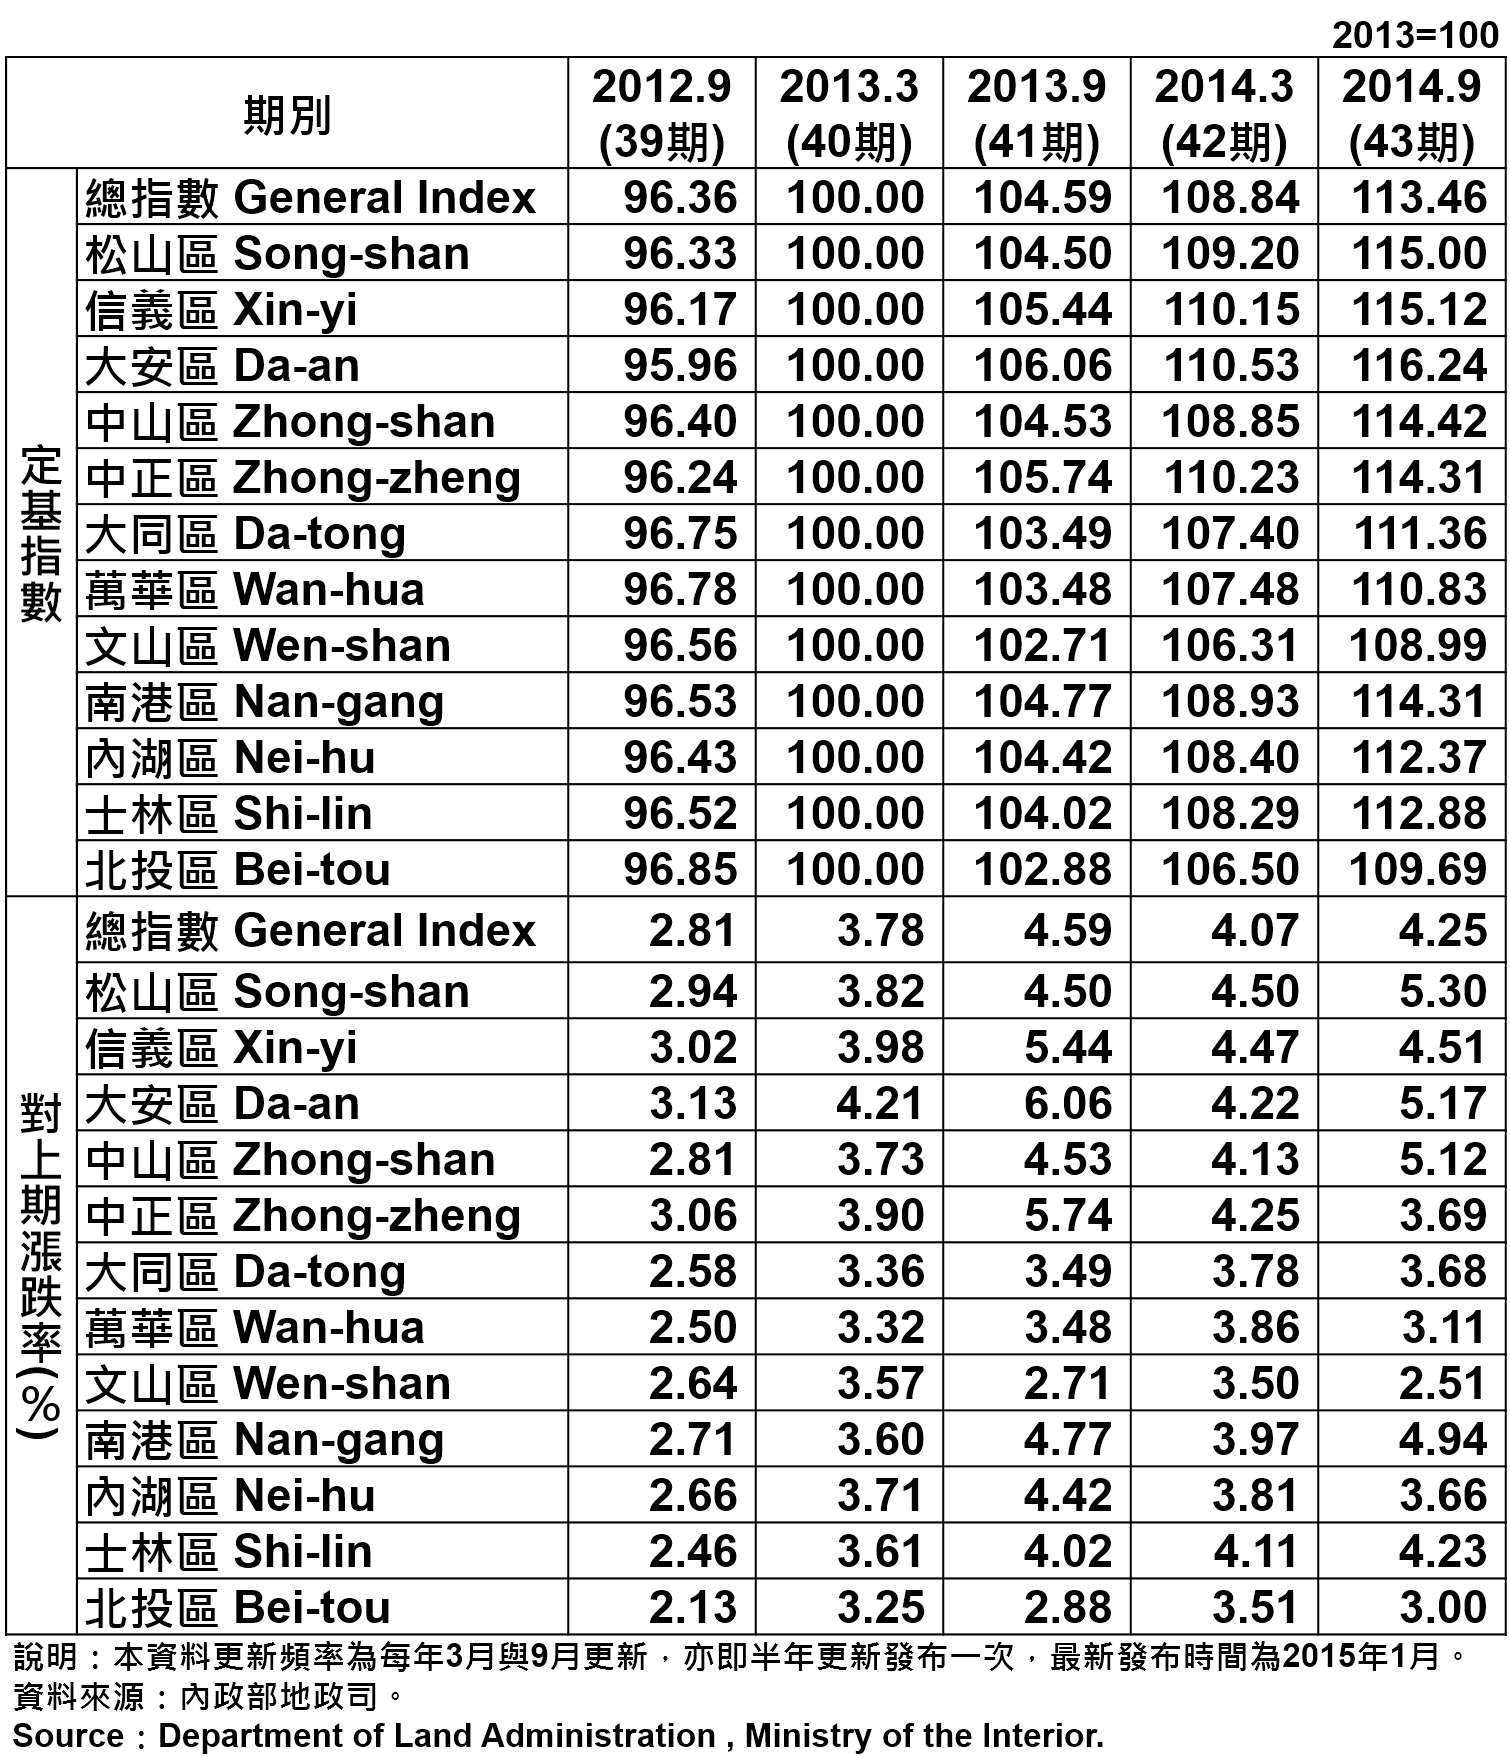 表1 臺北市都市地價指數分區表 Taipei's Urban Land Price Indexes by Districts